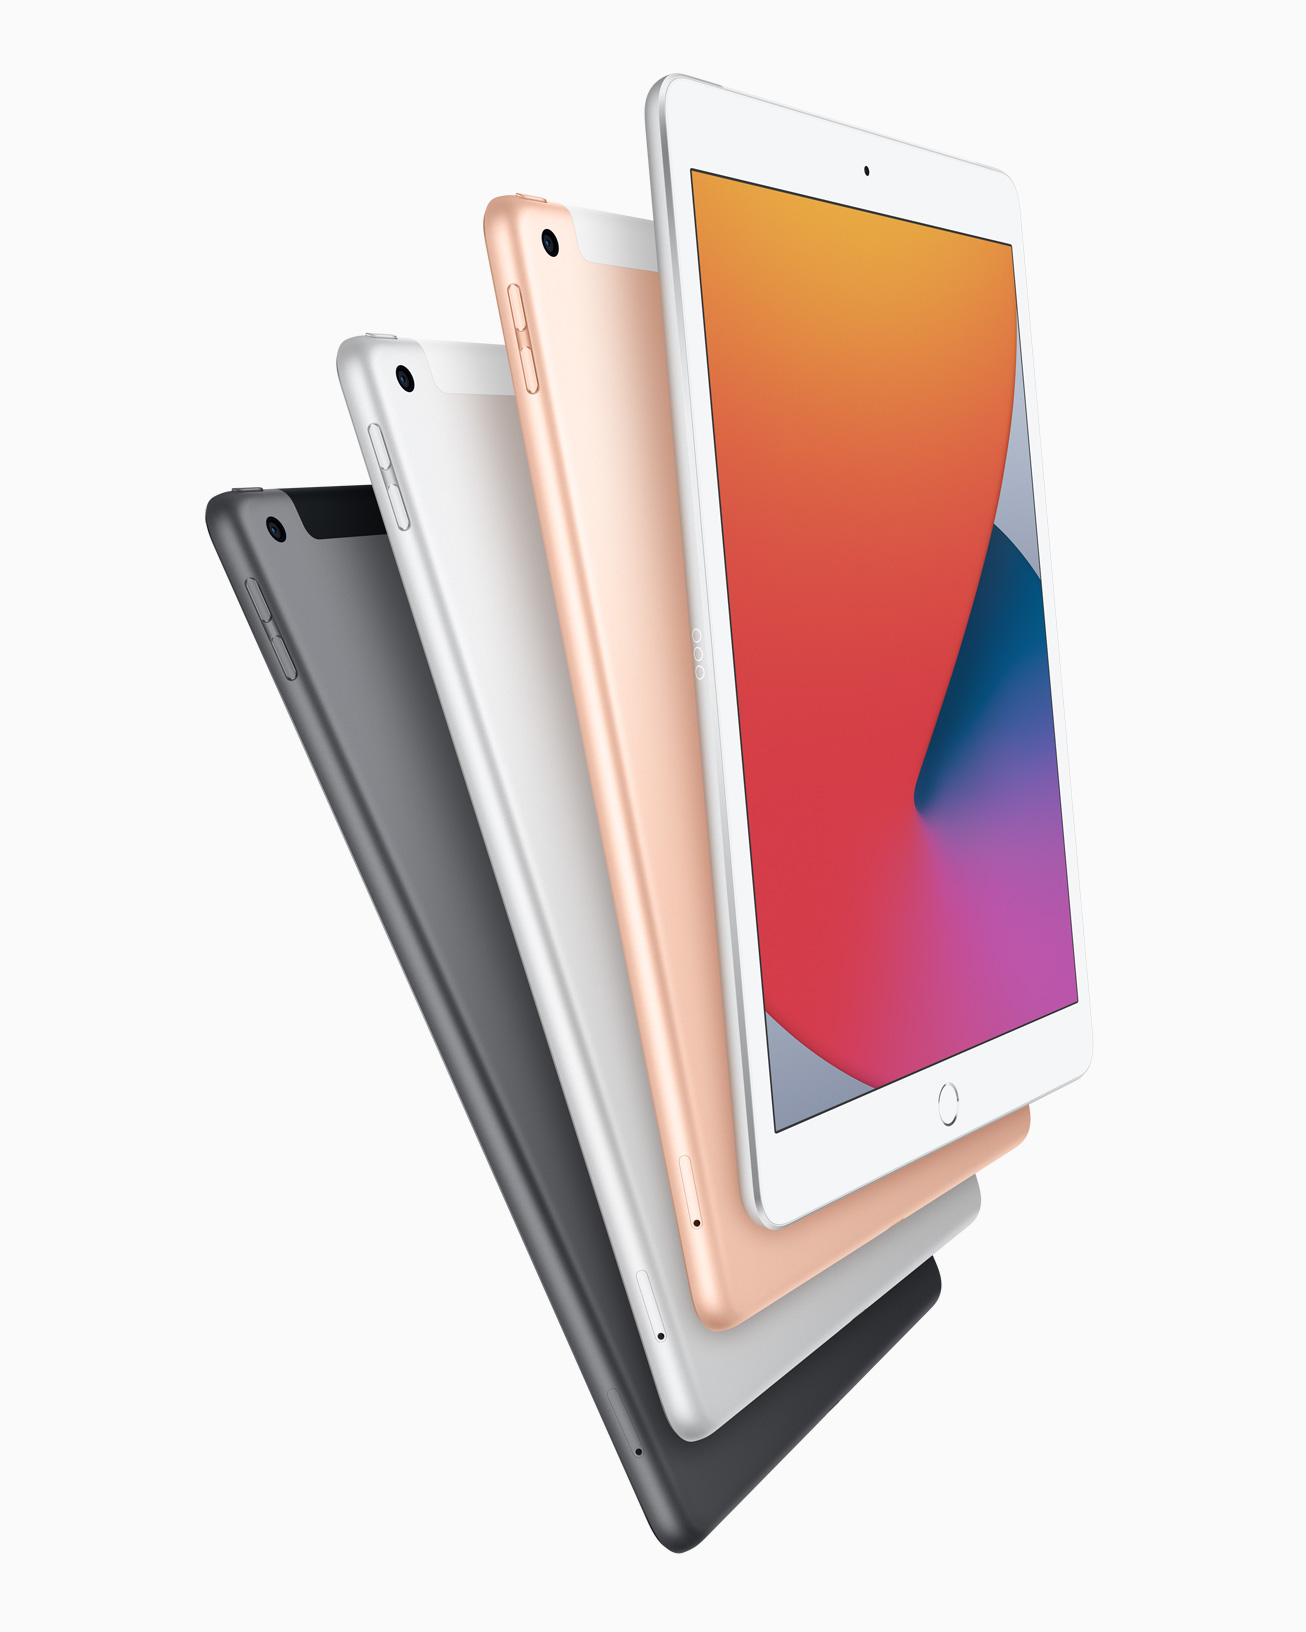 Народный iPad: процессор A12 Bionic в классическом iPad за $329  